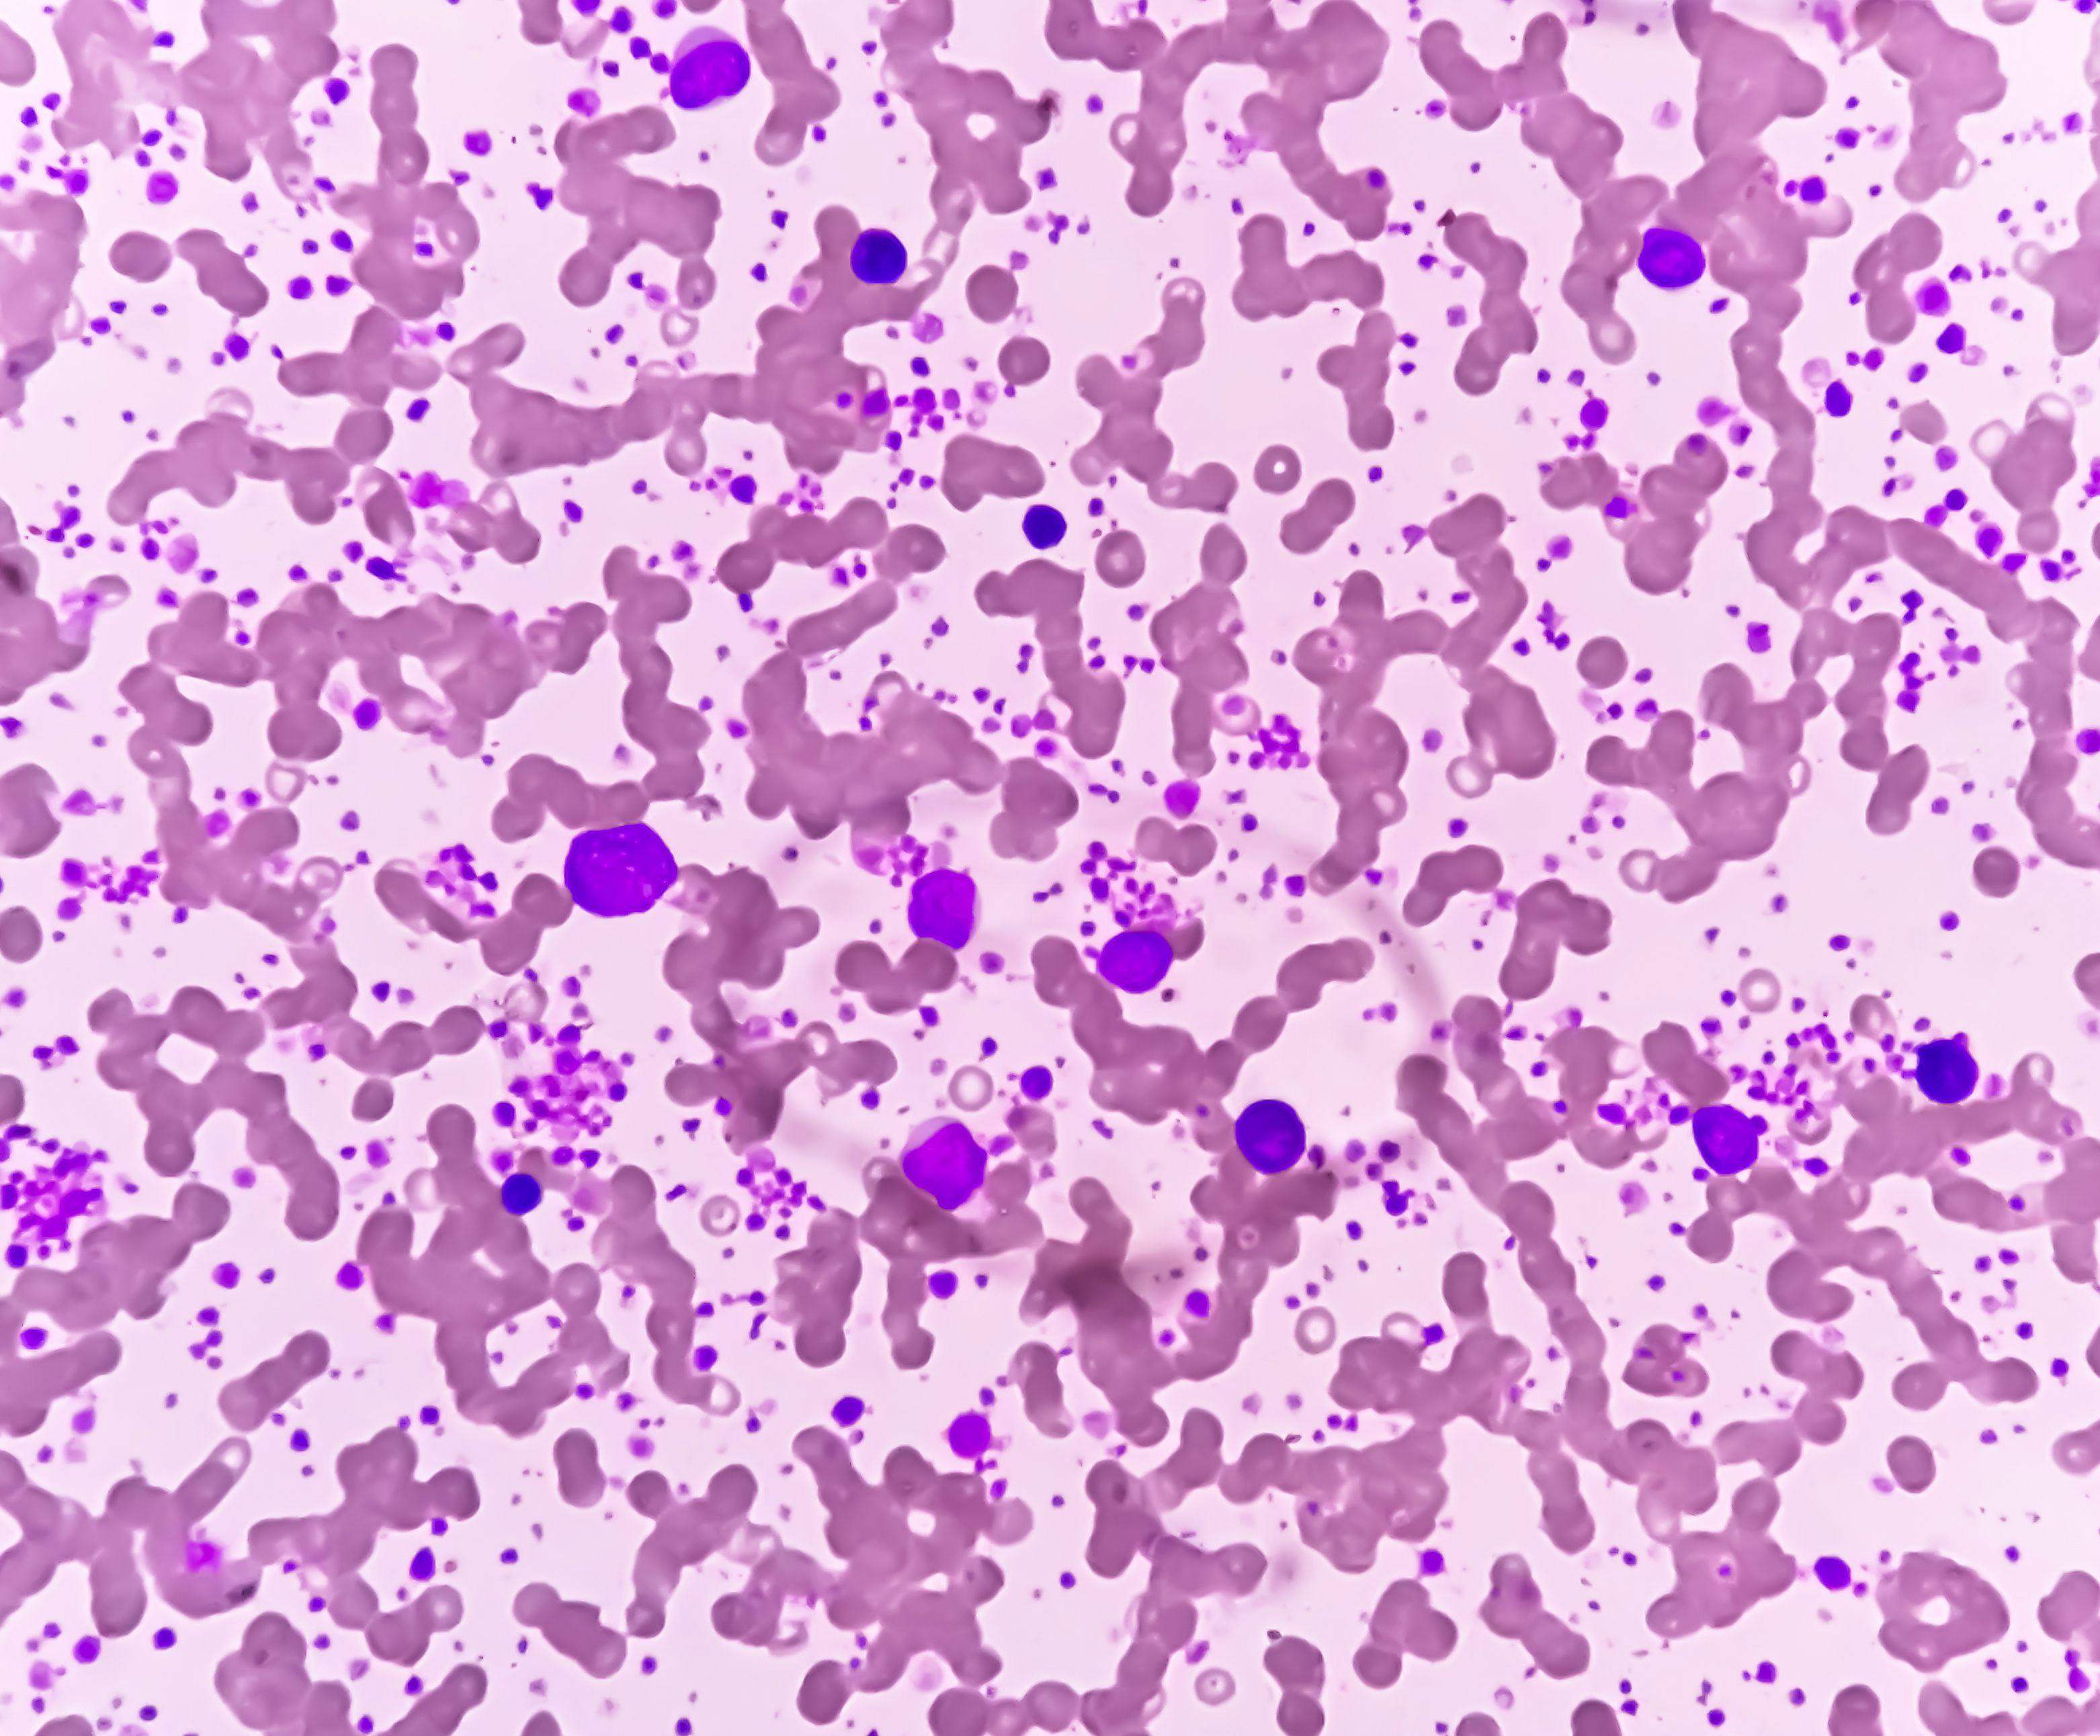 Chronic myeloid leukemia (CML) in accelerated phase with thrombocytosis. Chronic myelogenous leukemia. | Image Credit: Saiful52 - www.stock.adobe.com